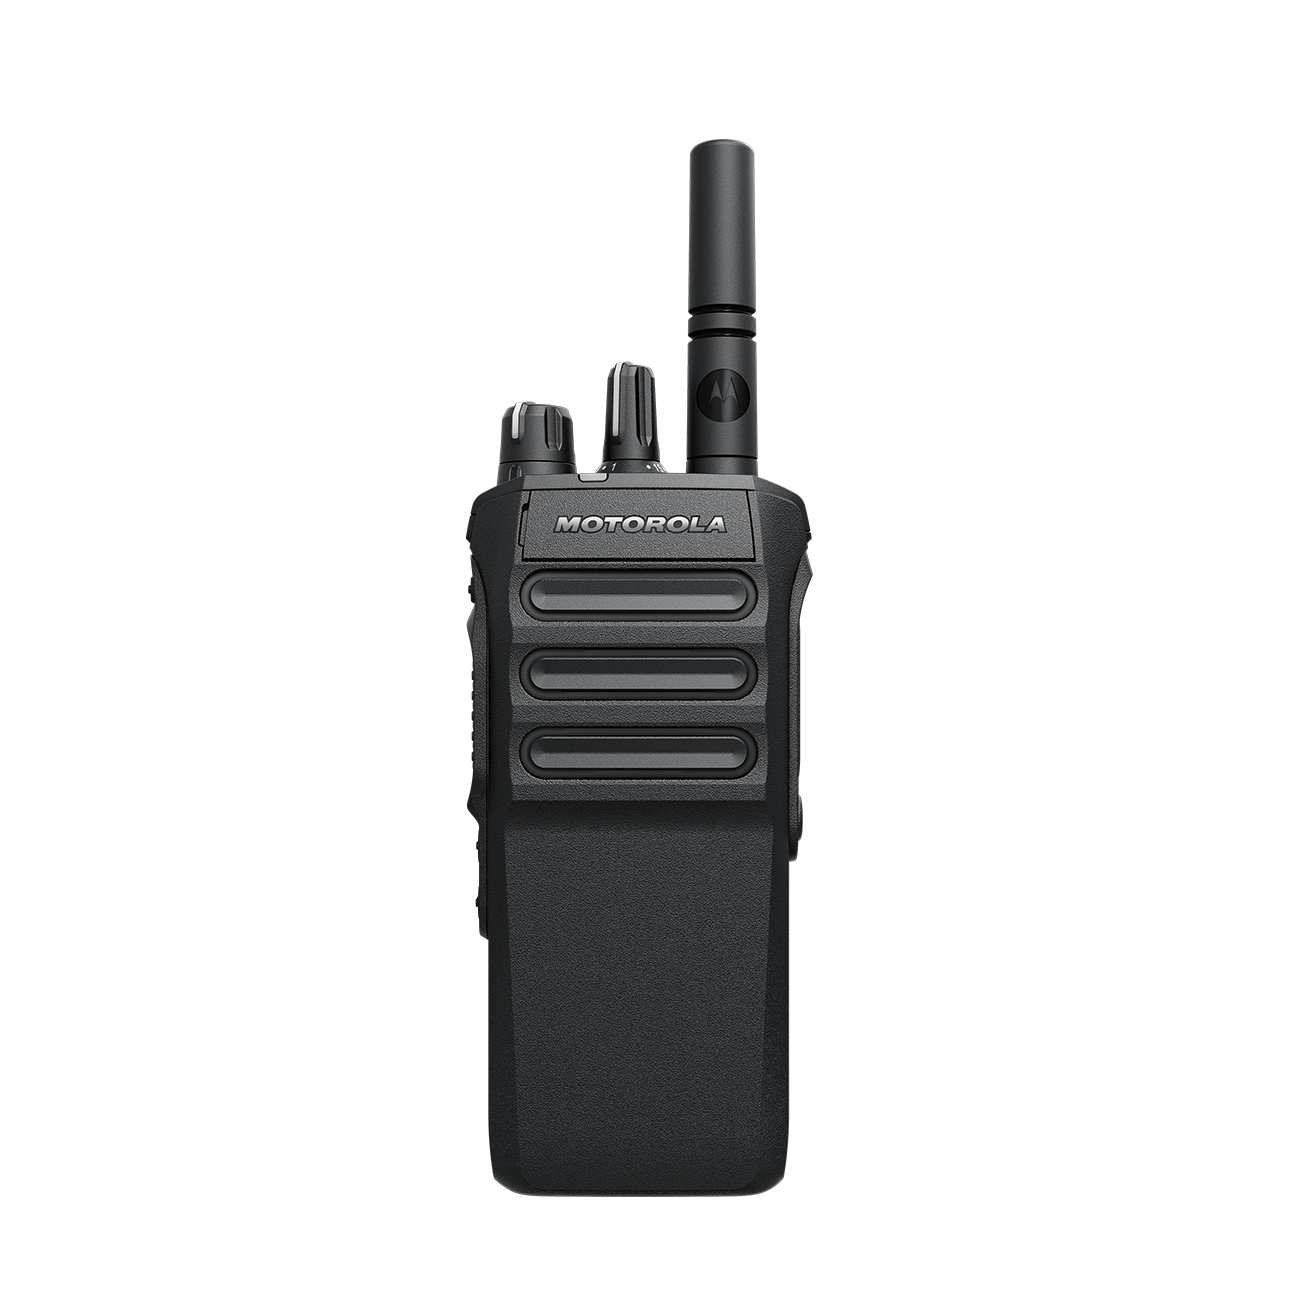 Motorola Mototrbo R7 Capable Portable Non-Keypad Radio 